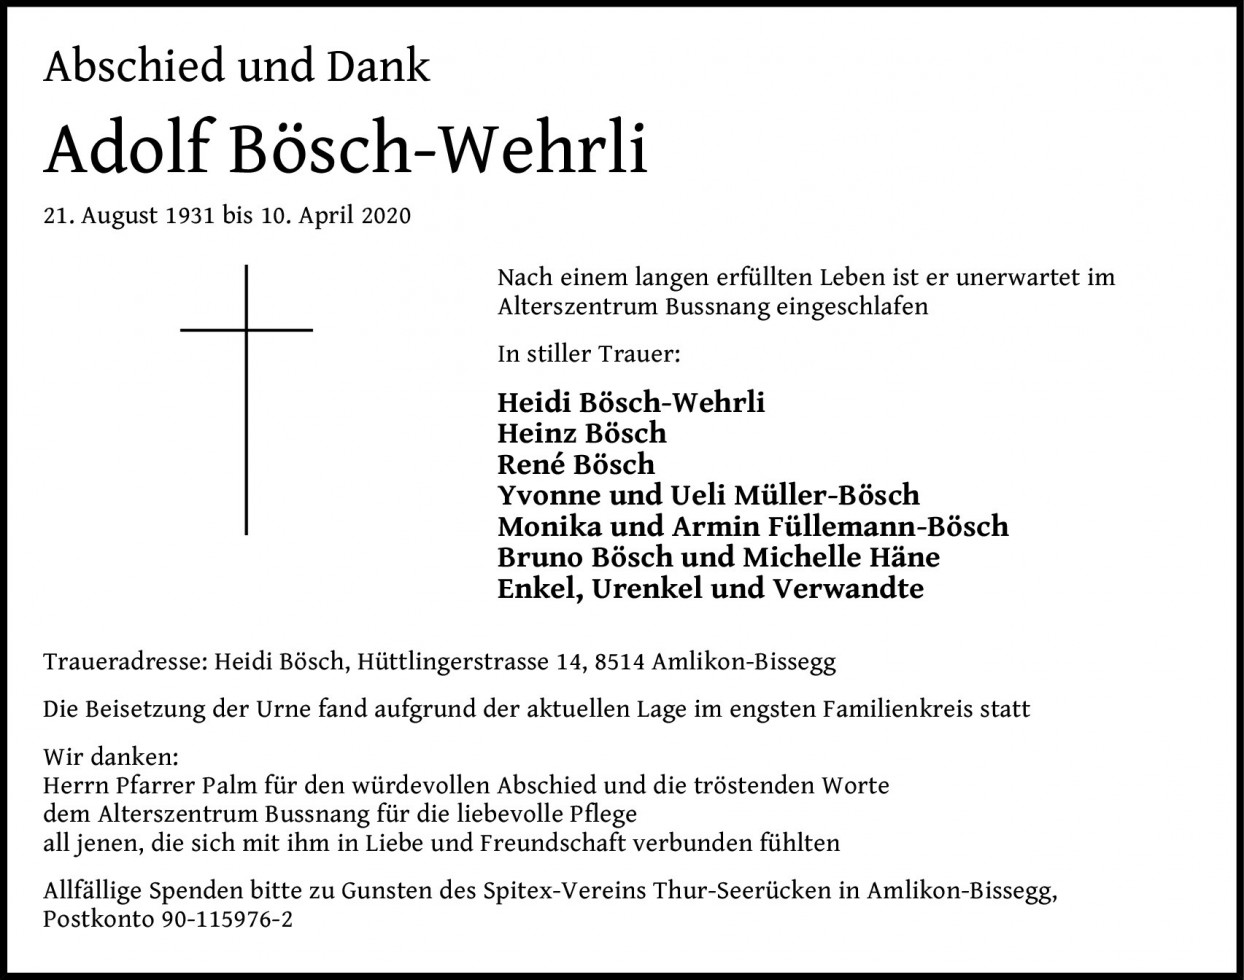 Adolf Bösch-Wehrli